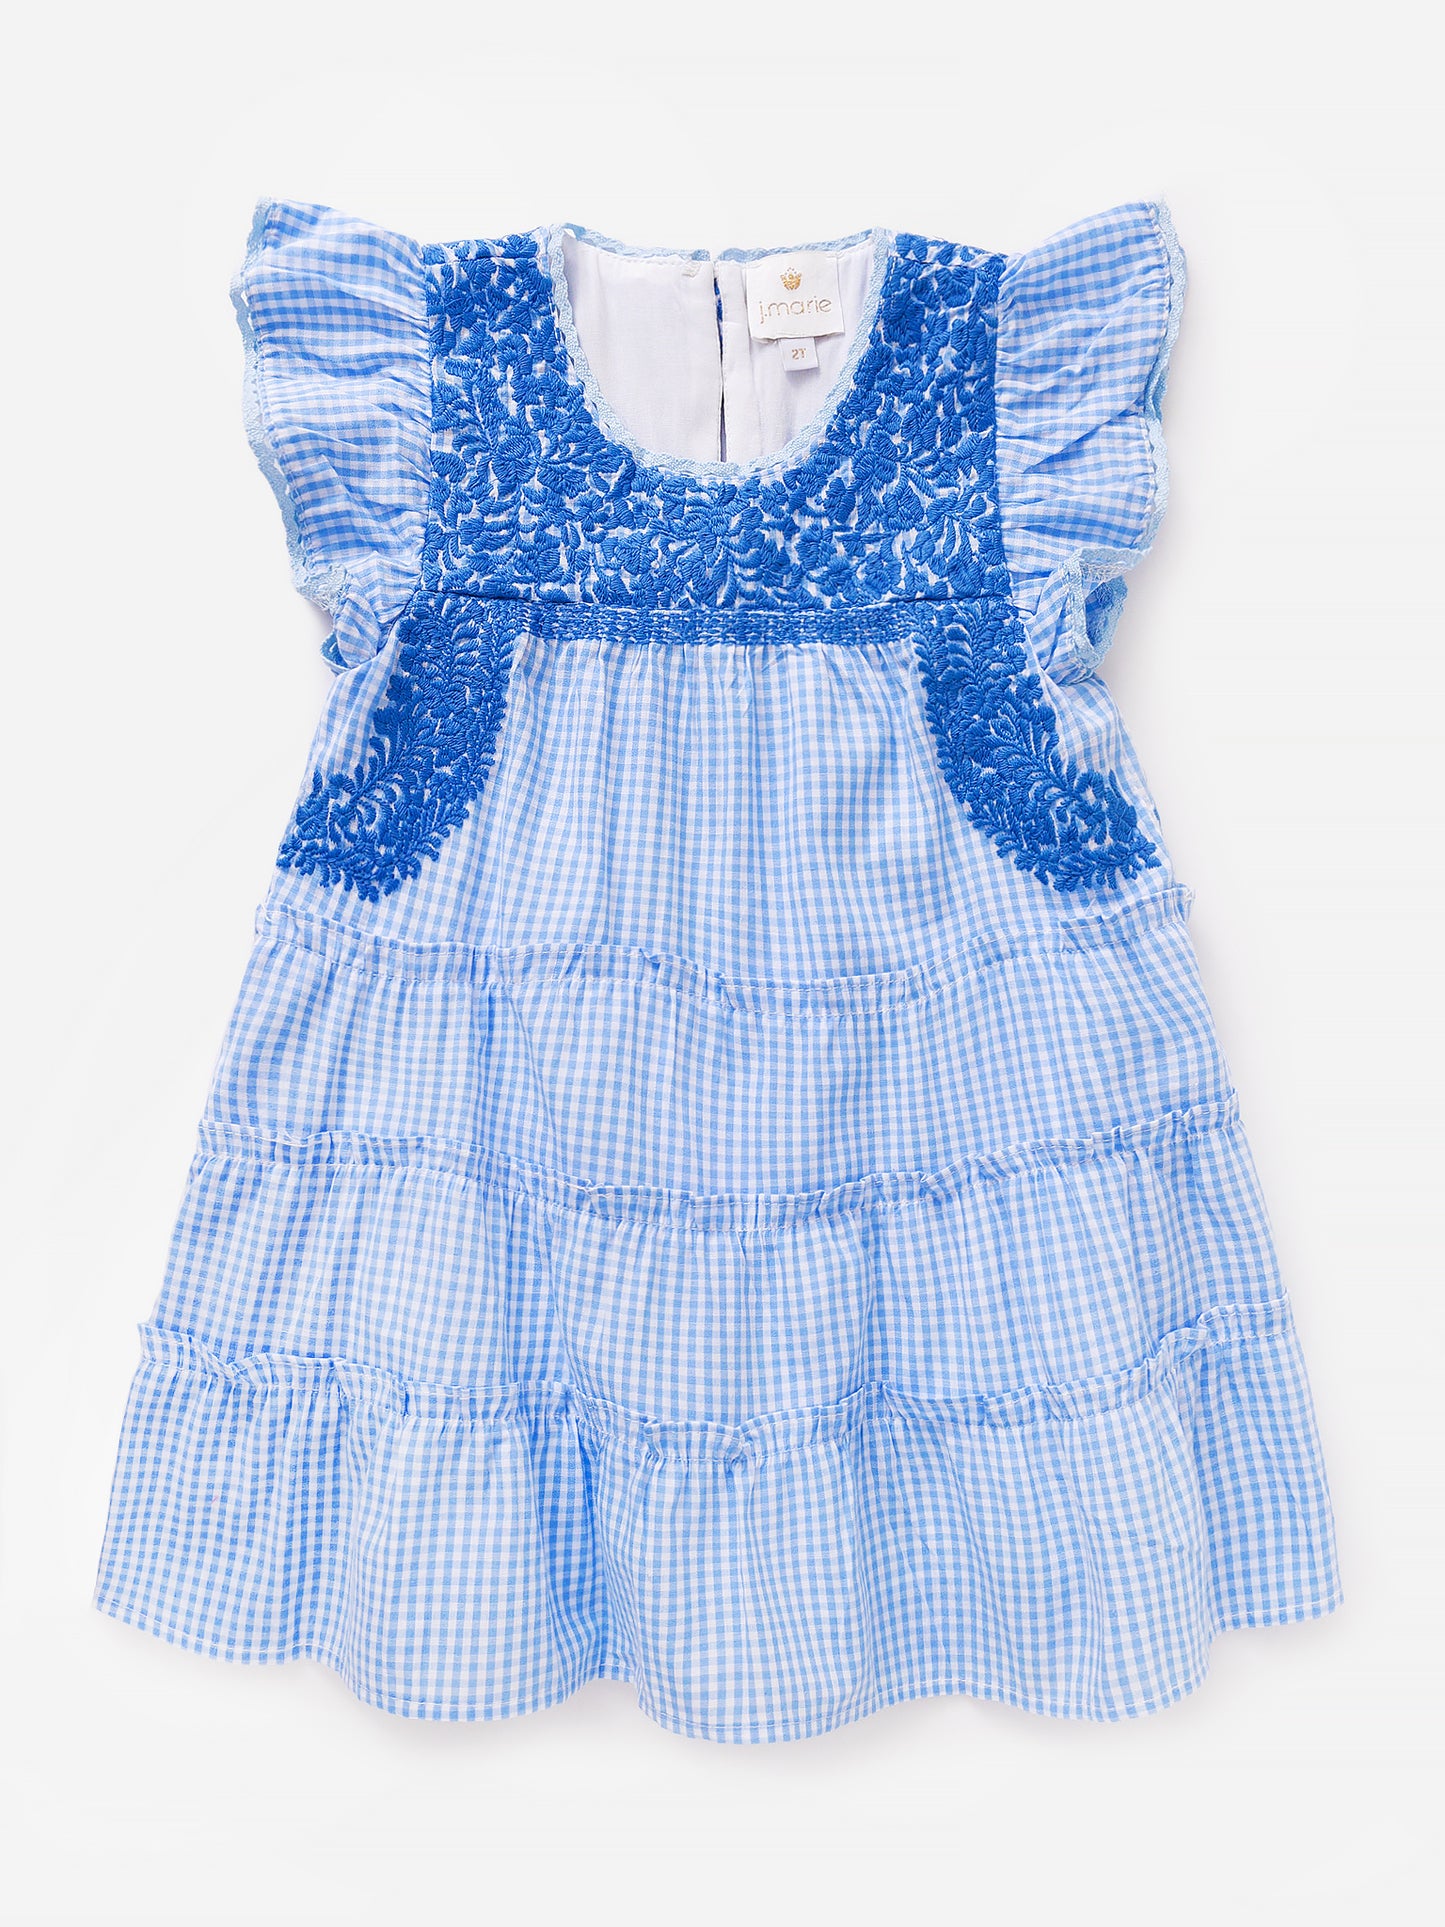 J. Marie Baby Girls' Hayden Dress